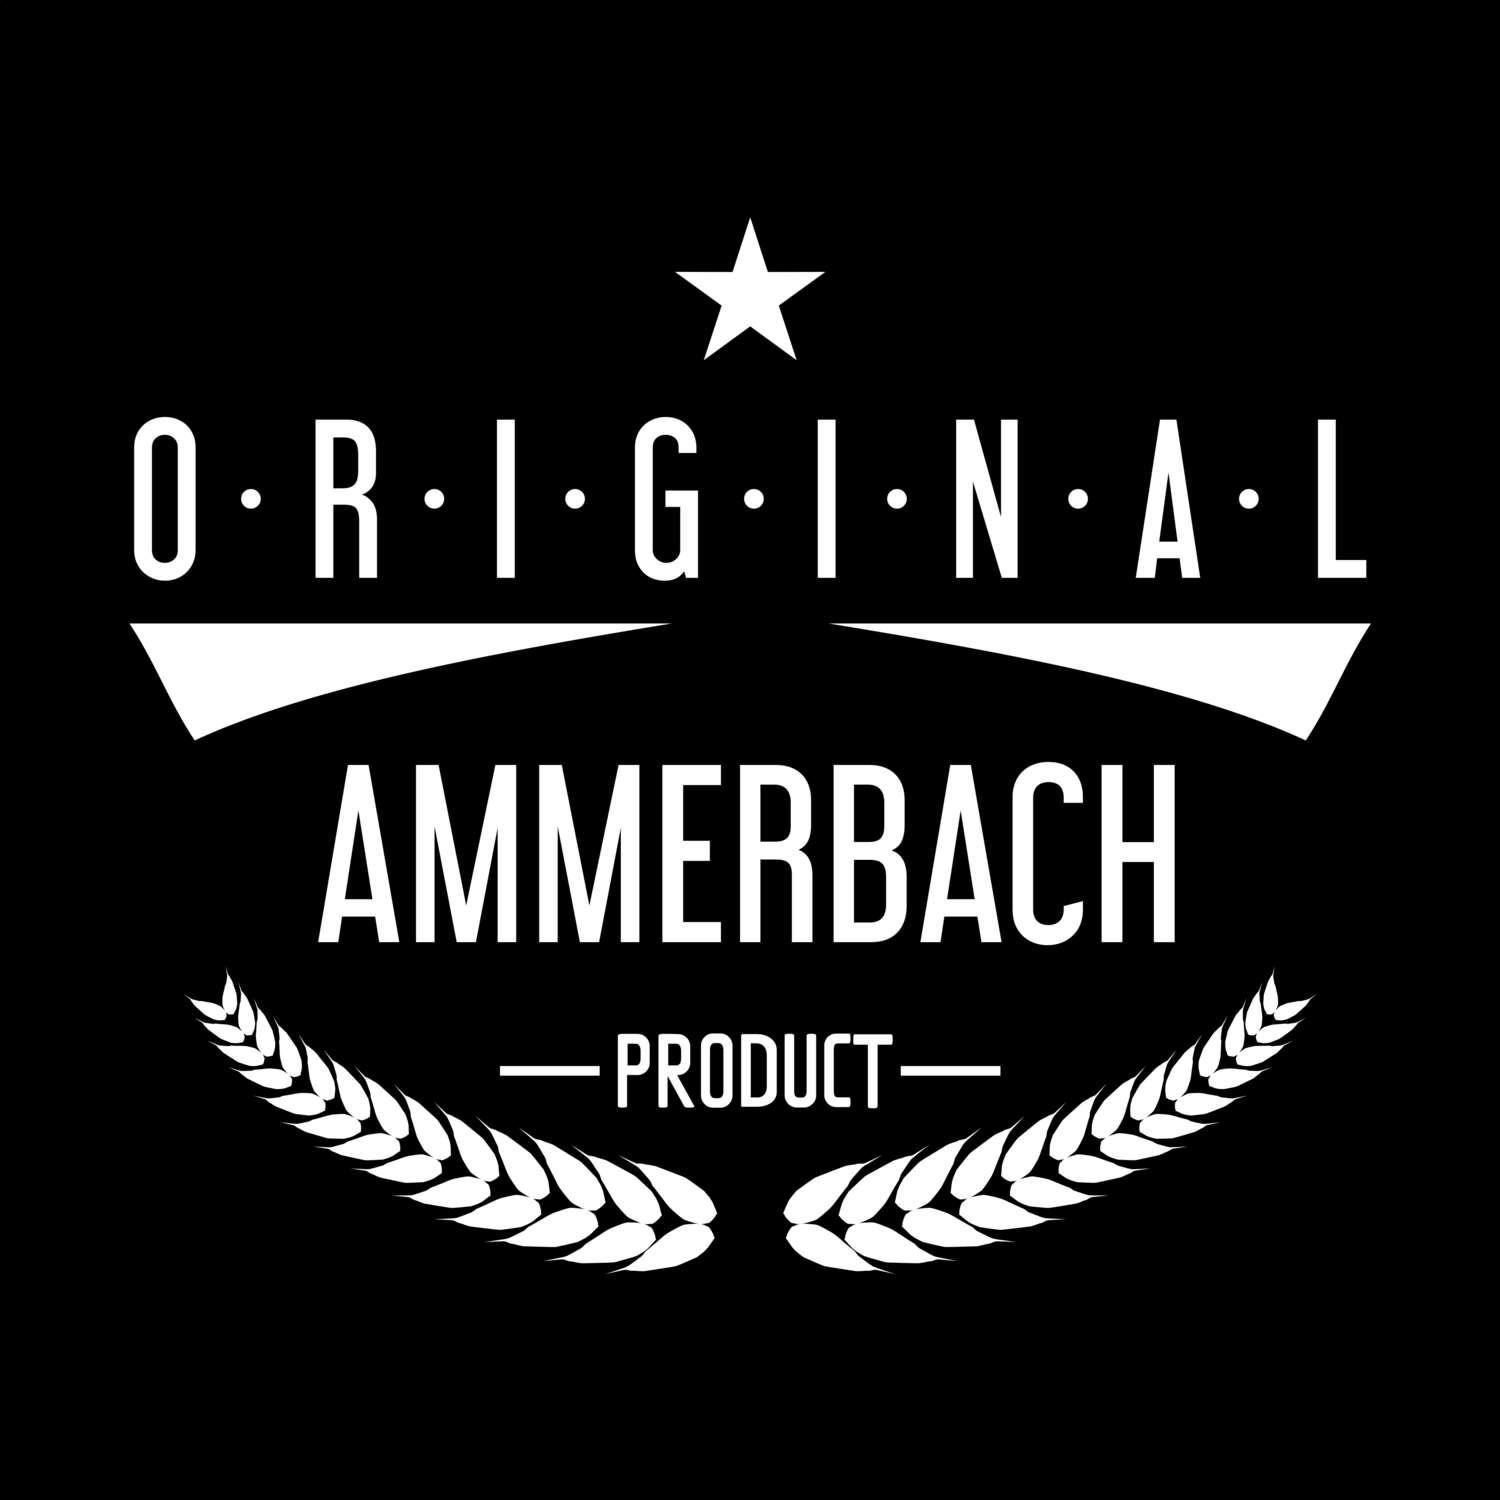 Ammerbach T-Shirt »Original Product«